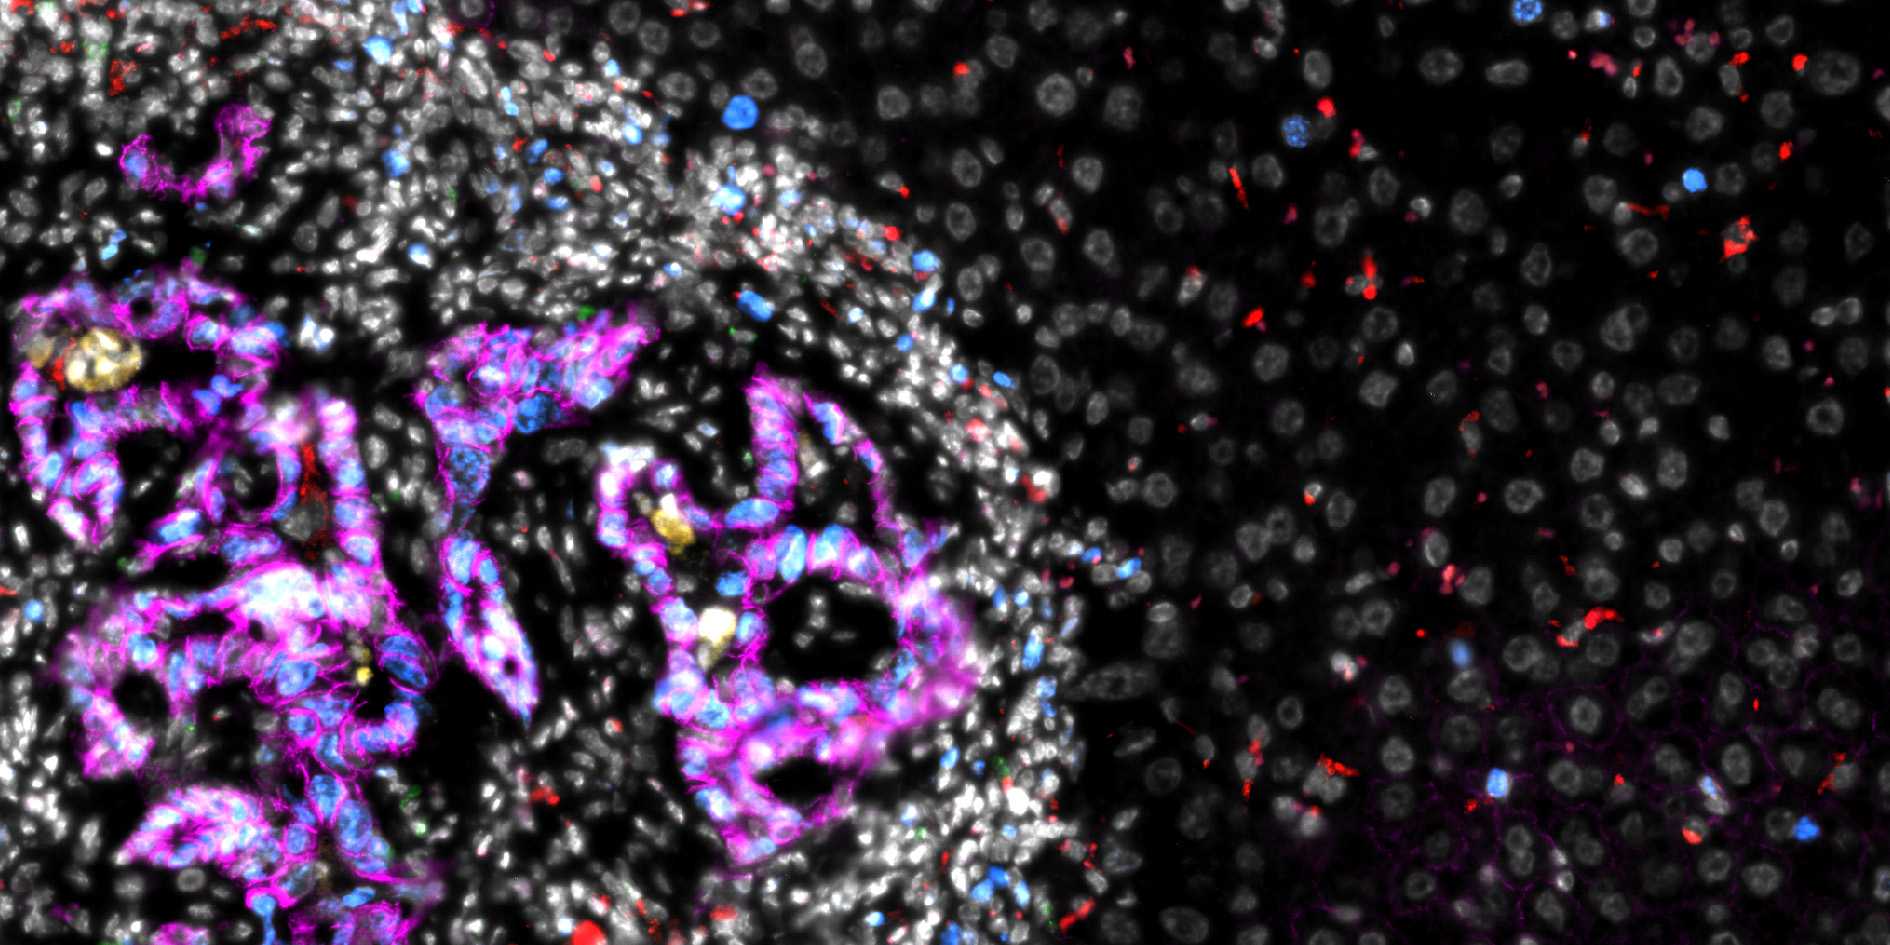 Mikroskopische Aufnahme einer Darmkrebsmetastase